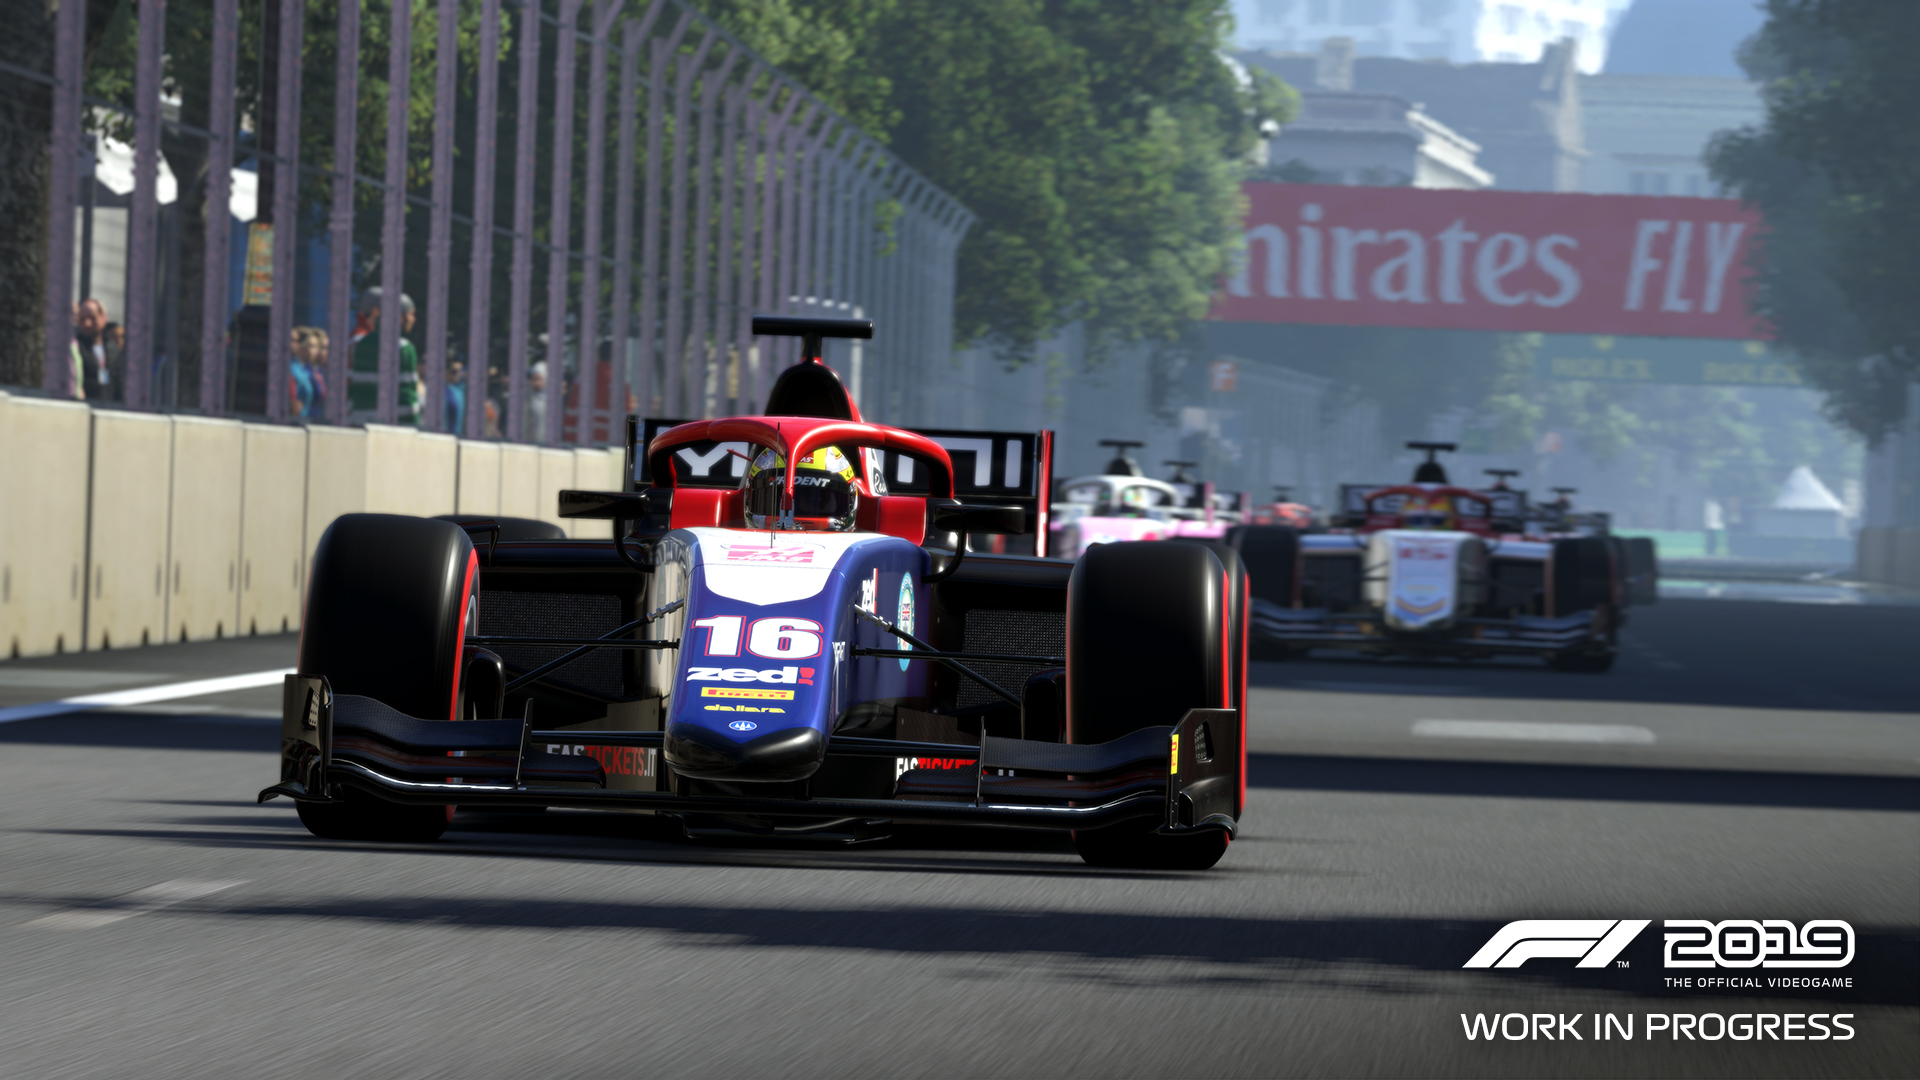 F1 2019 gameplay graphics